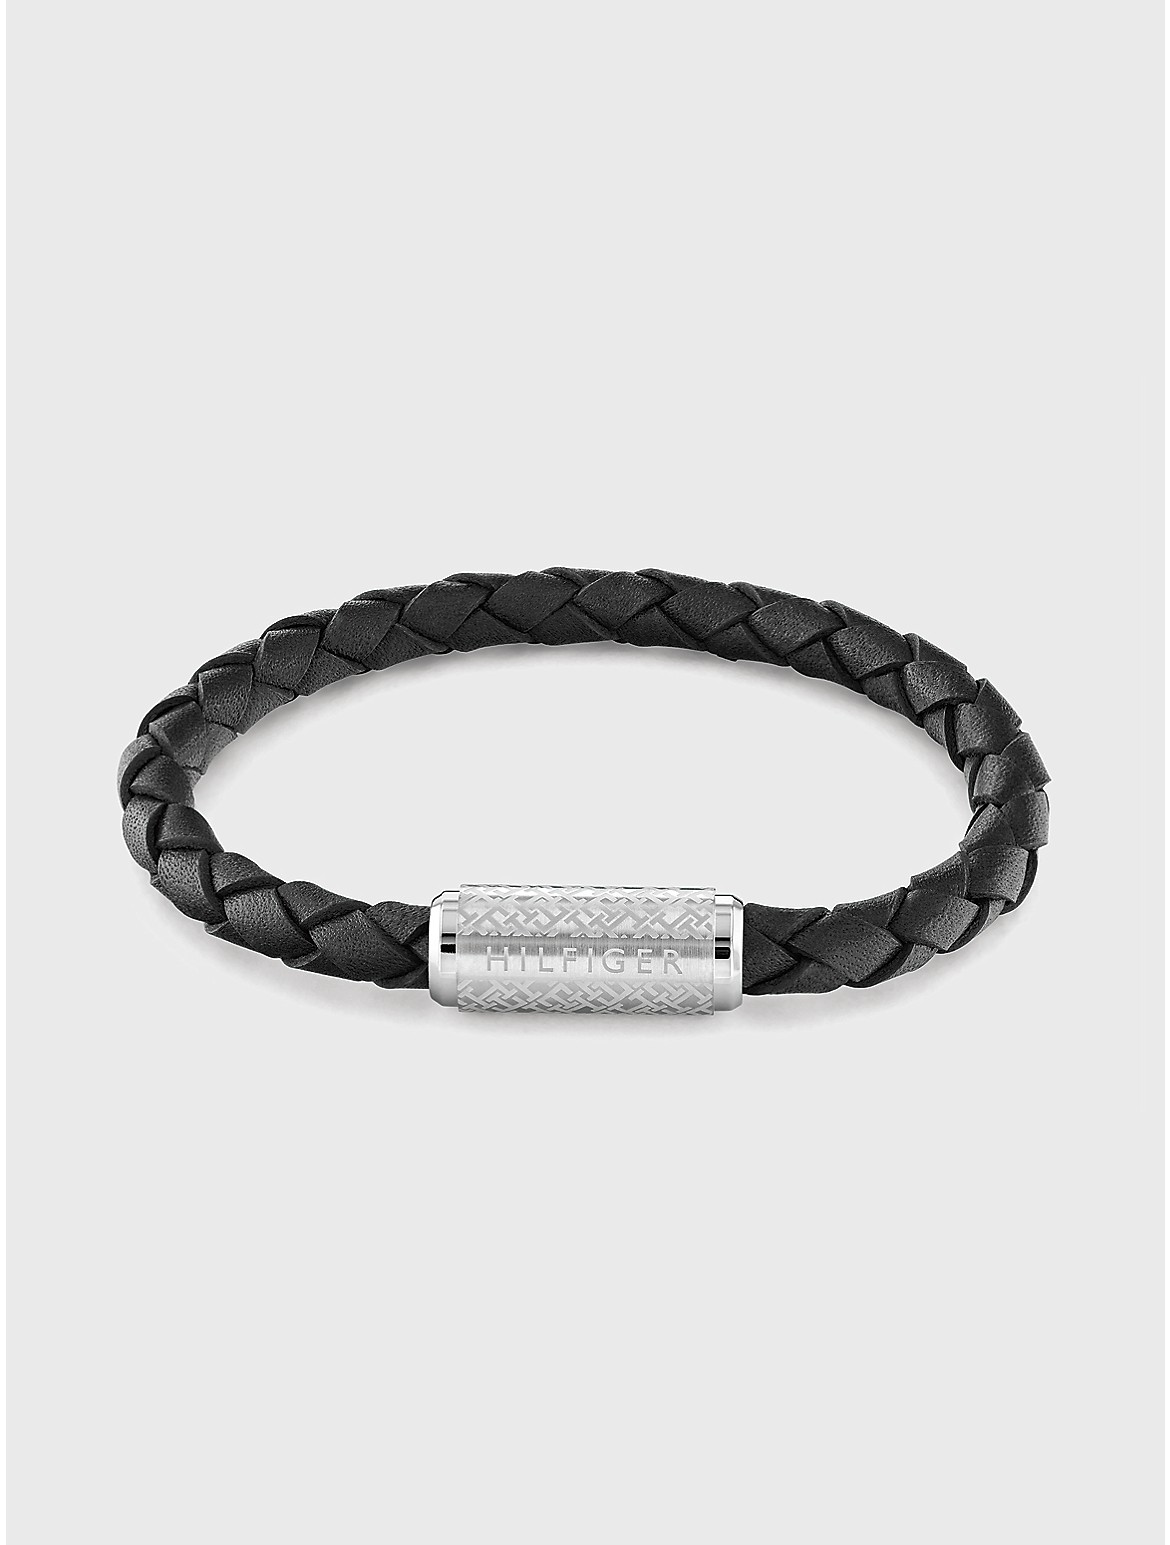 Tommy Hilfiger Men's Adjustable Braided Black Leather Bracelet - Black